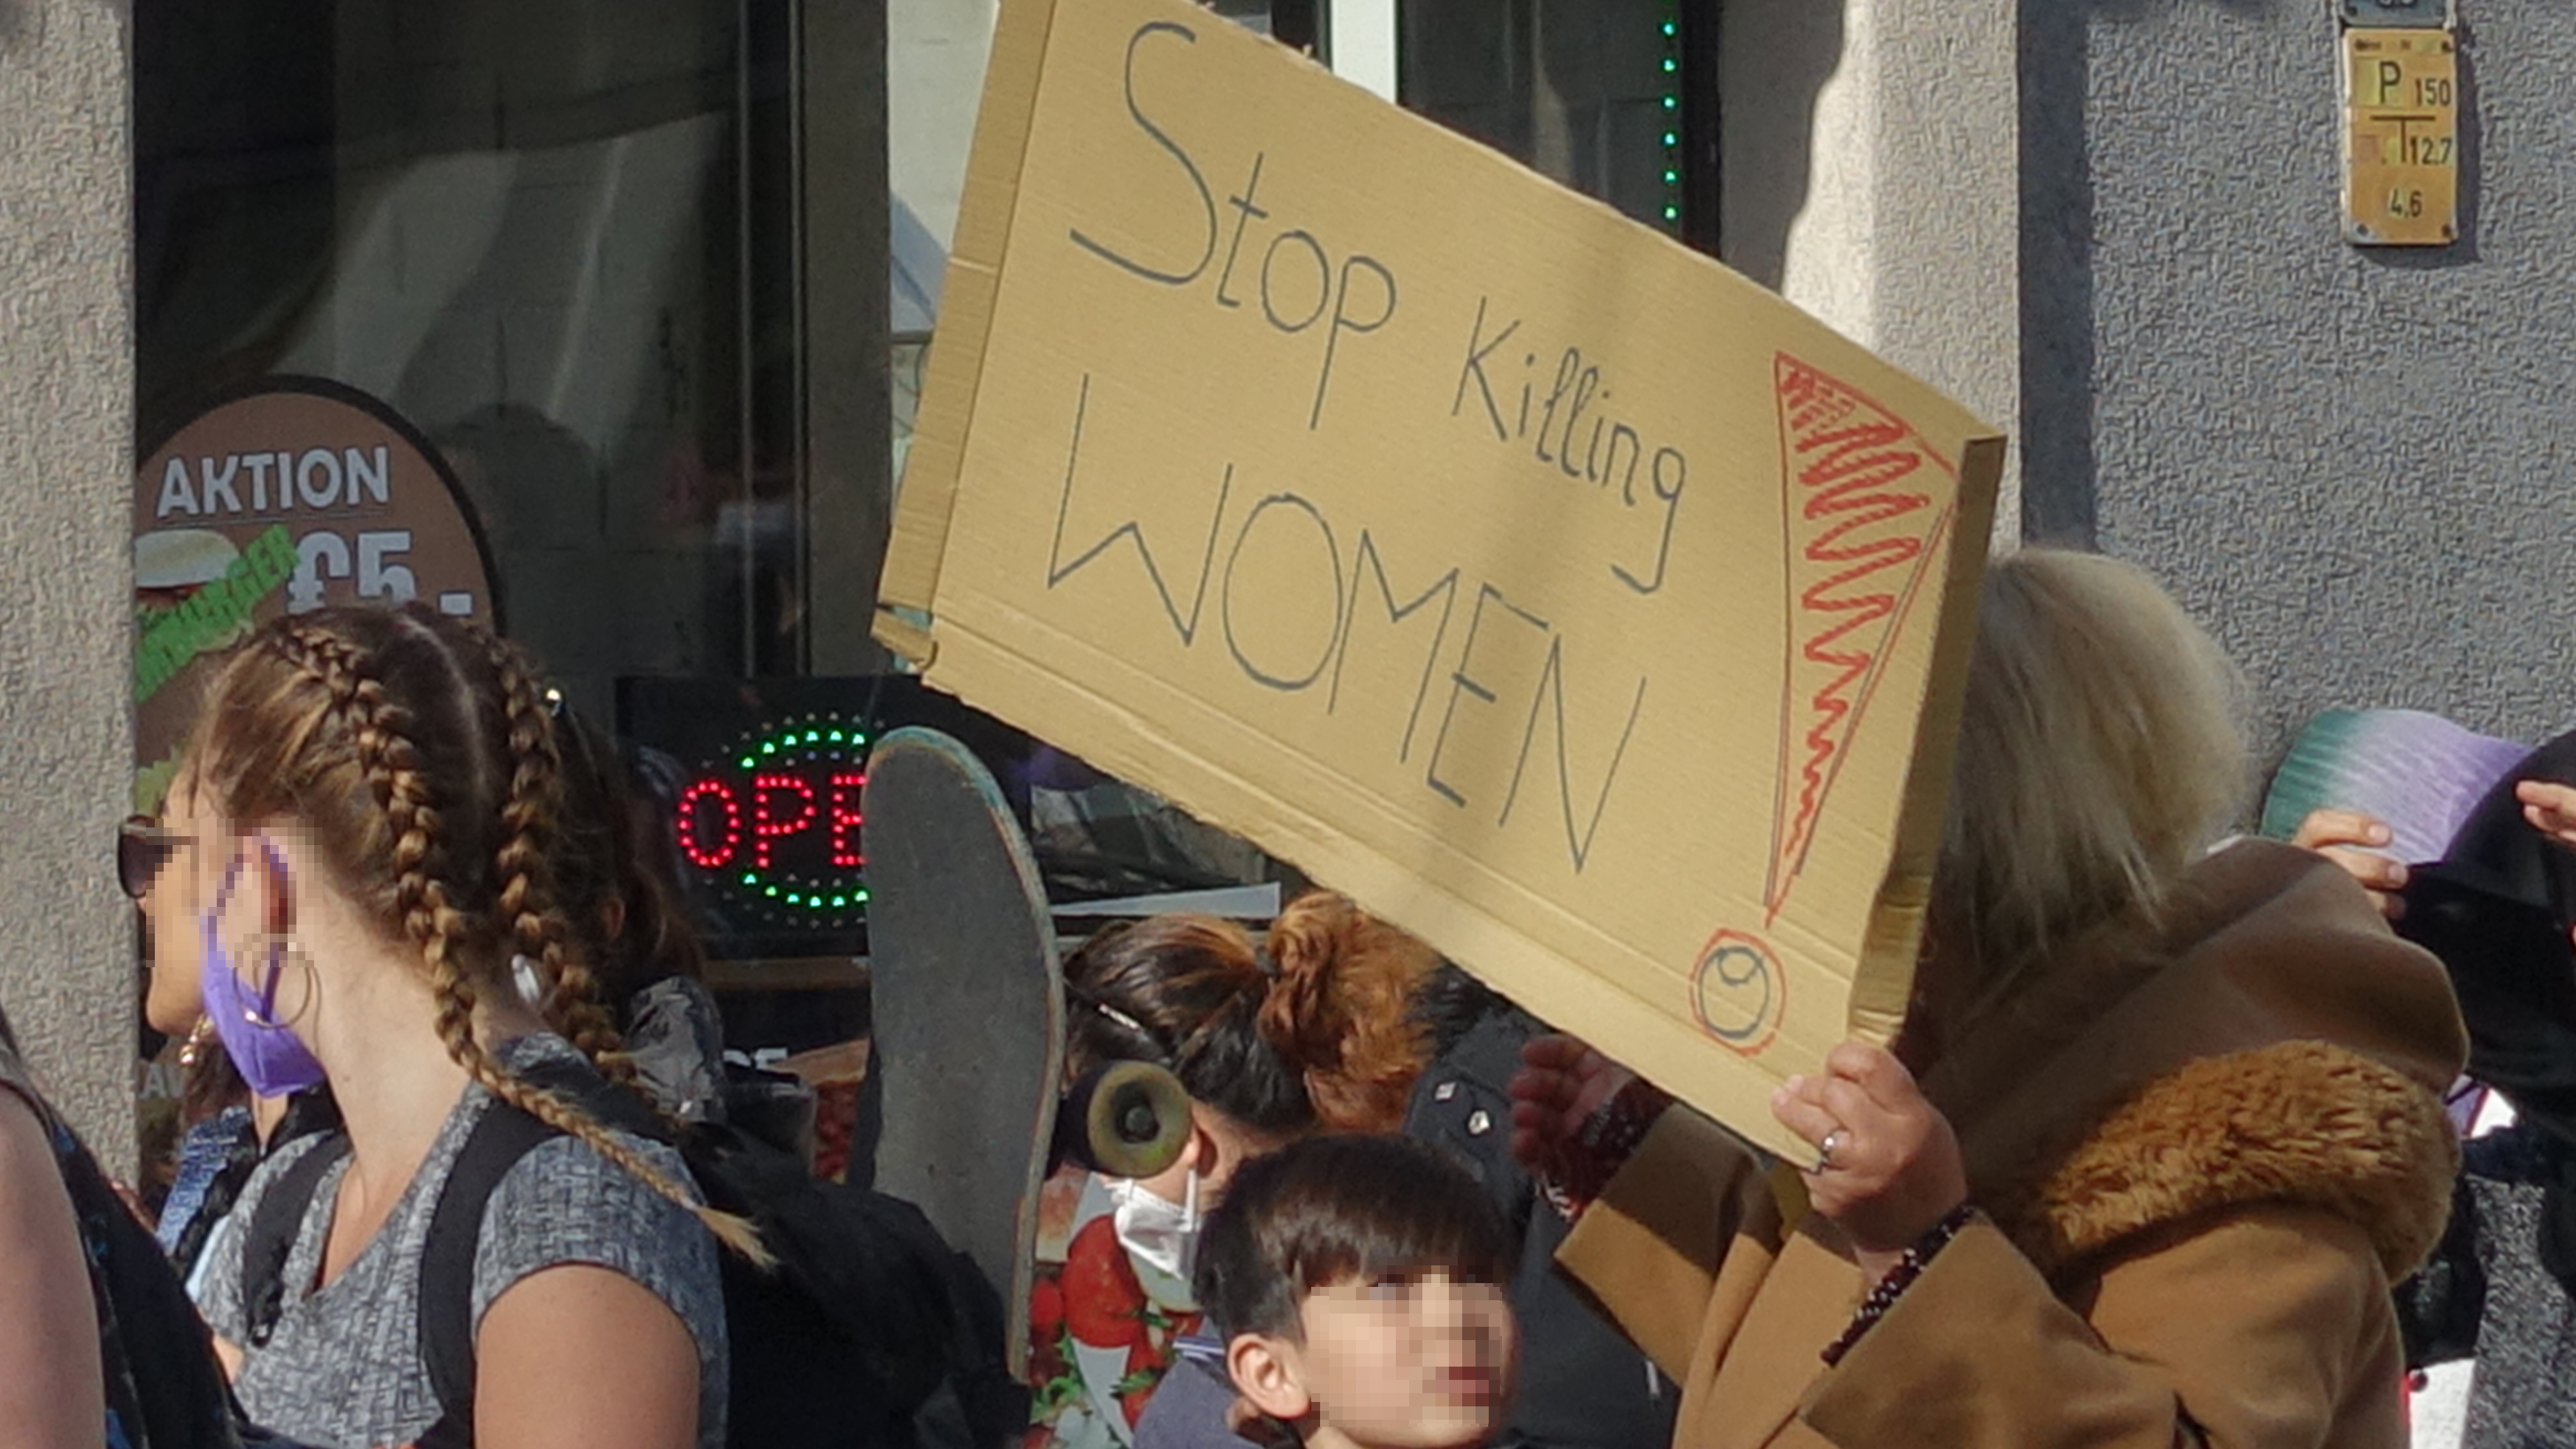 Demonstration gegen Femizide, Frau mit Schild "Stop Killing WOMEN"